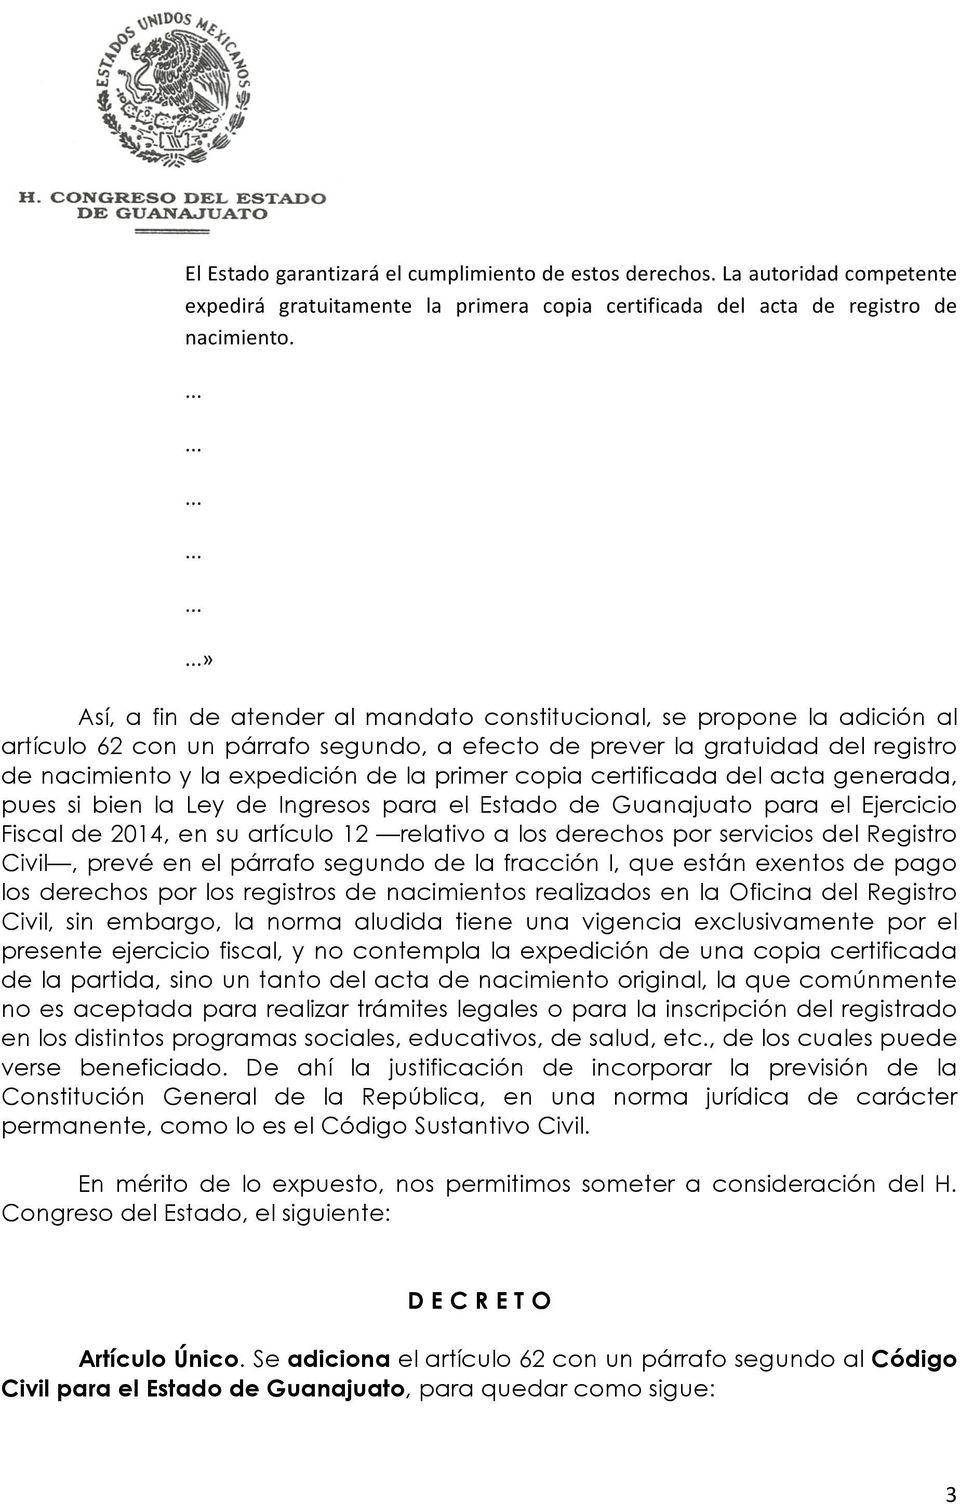 copia certificada del acta generada, pues si bien la Ley de Ingresos para el Estado de Guanajuato para el Ejercicio Fiscal de 2014, en su artículo 12 relativo a los derechos por servicios del